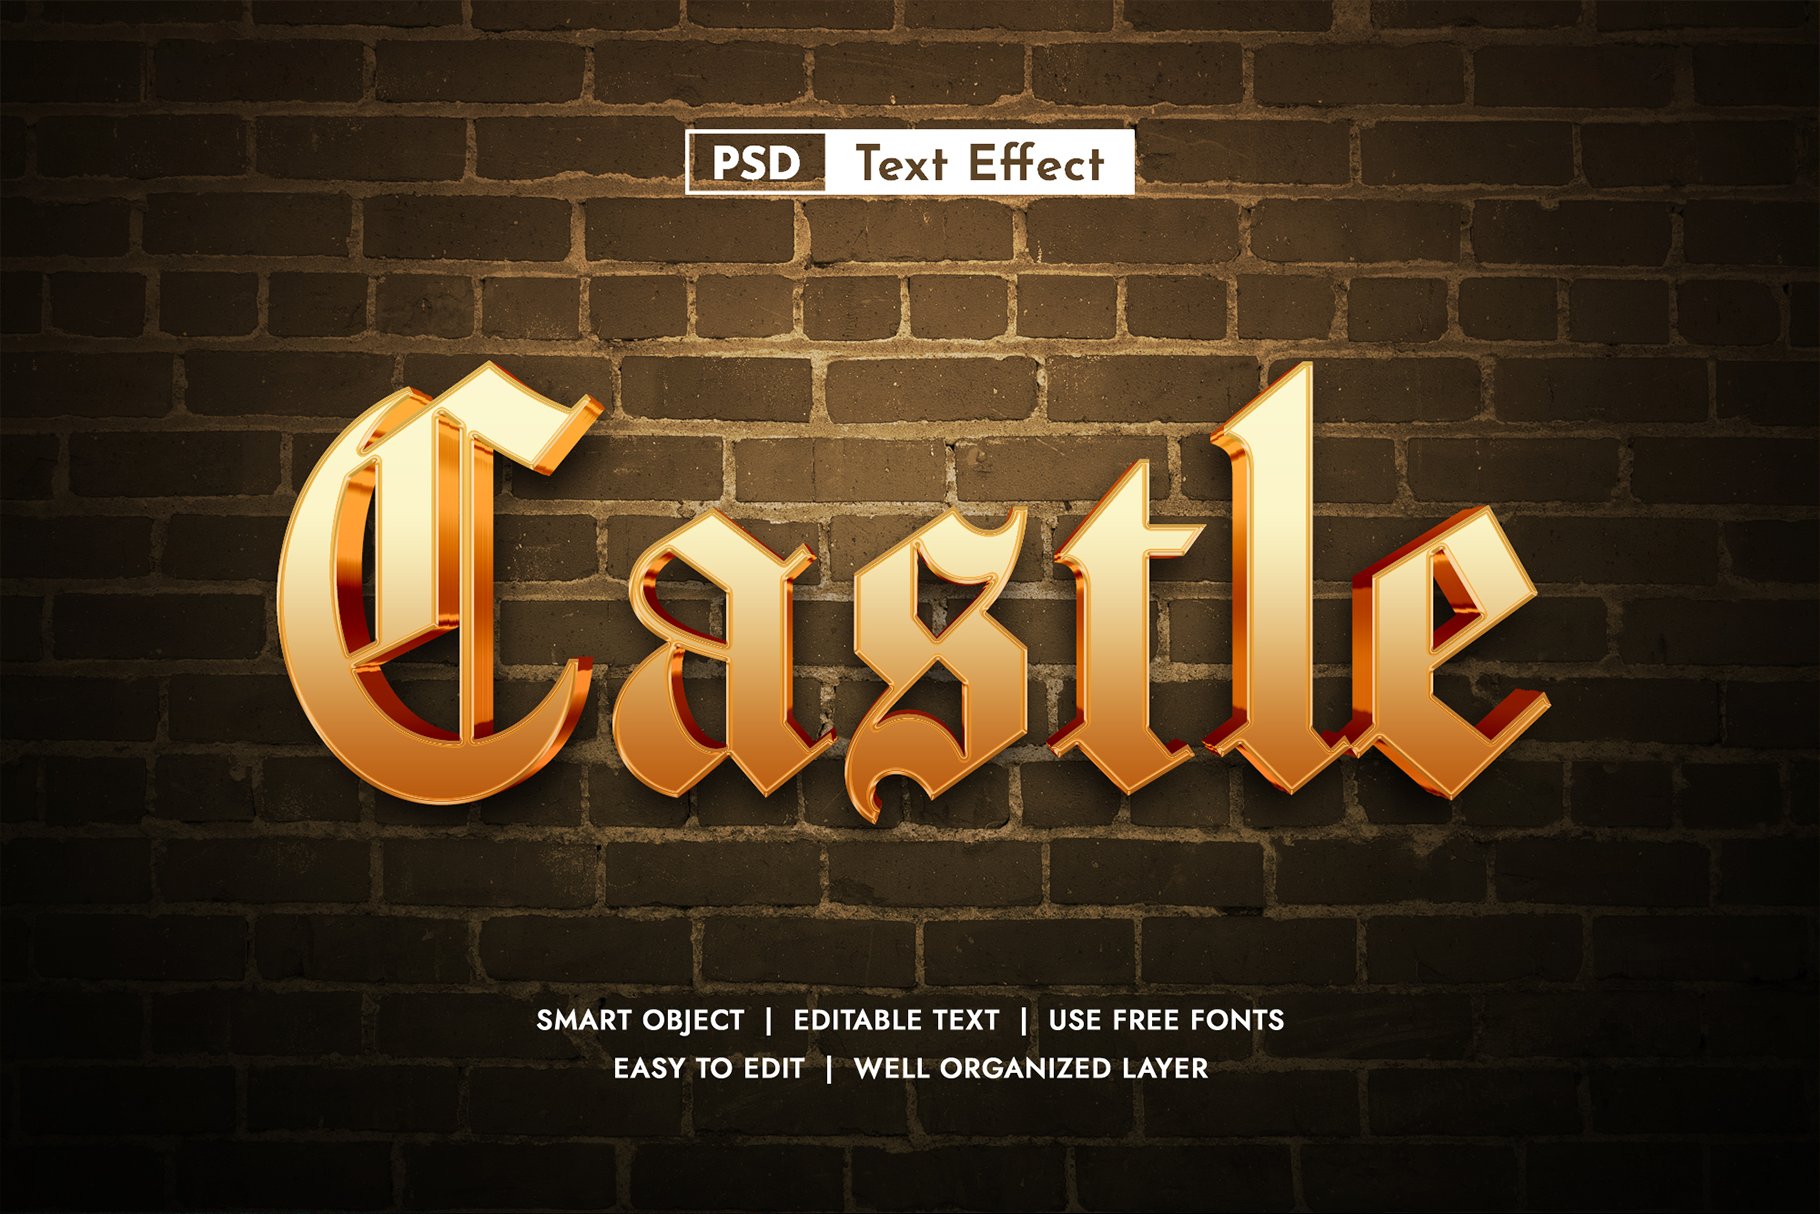 Castle 3D Editable Text Effectcover image.